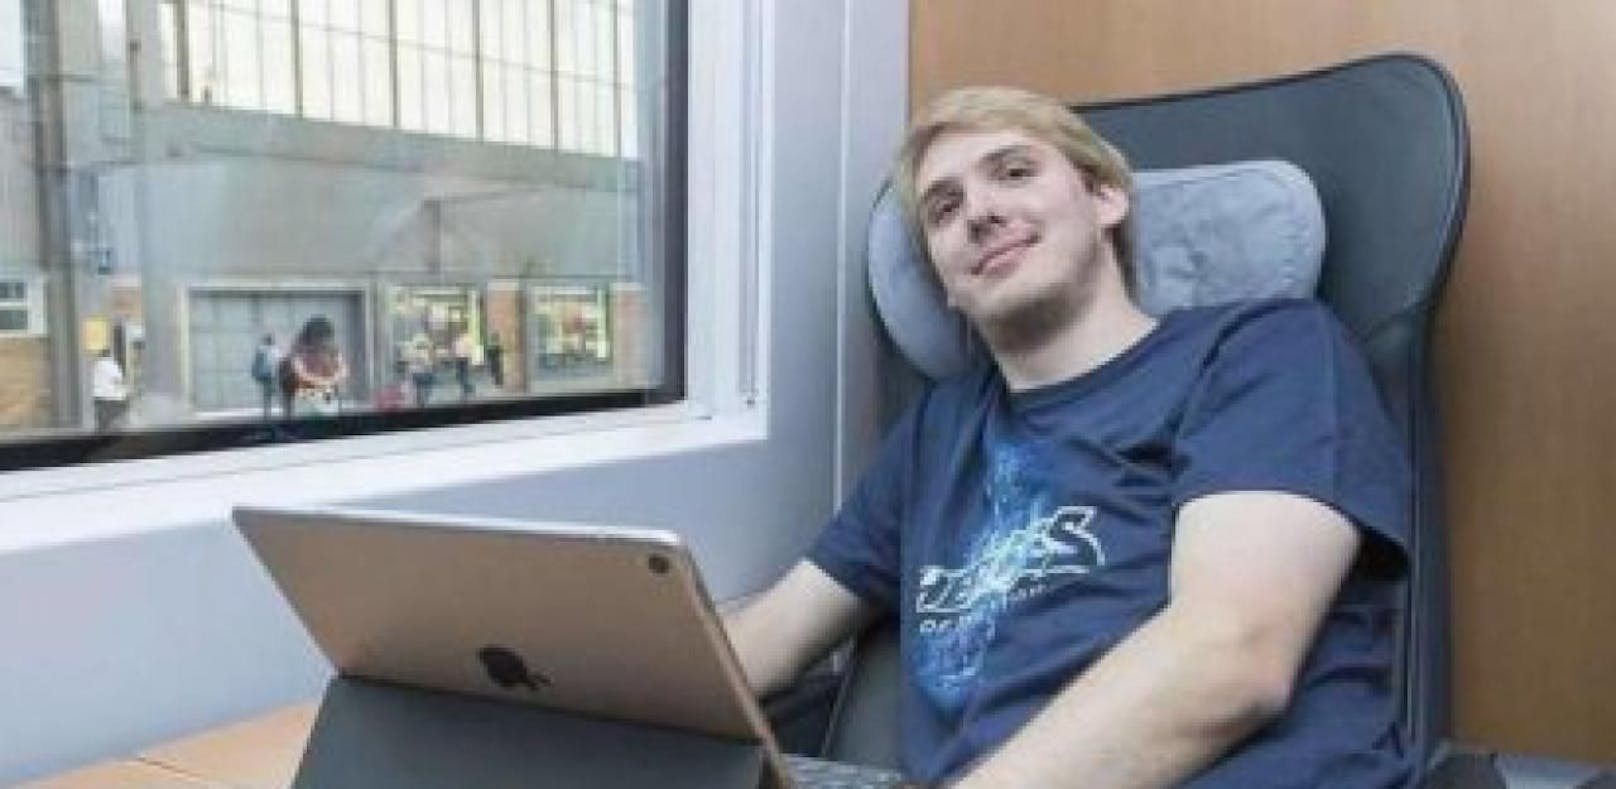 Kein Geld für die Wohnung: 25-Jähriger lebt im Zug